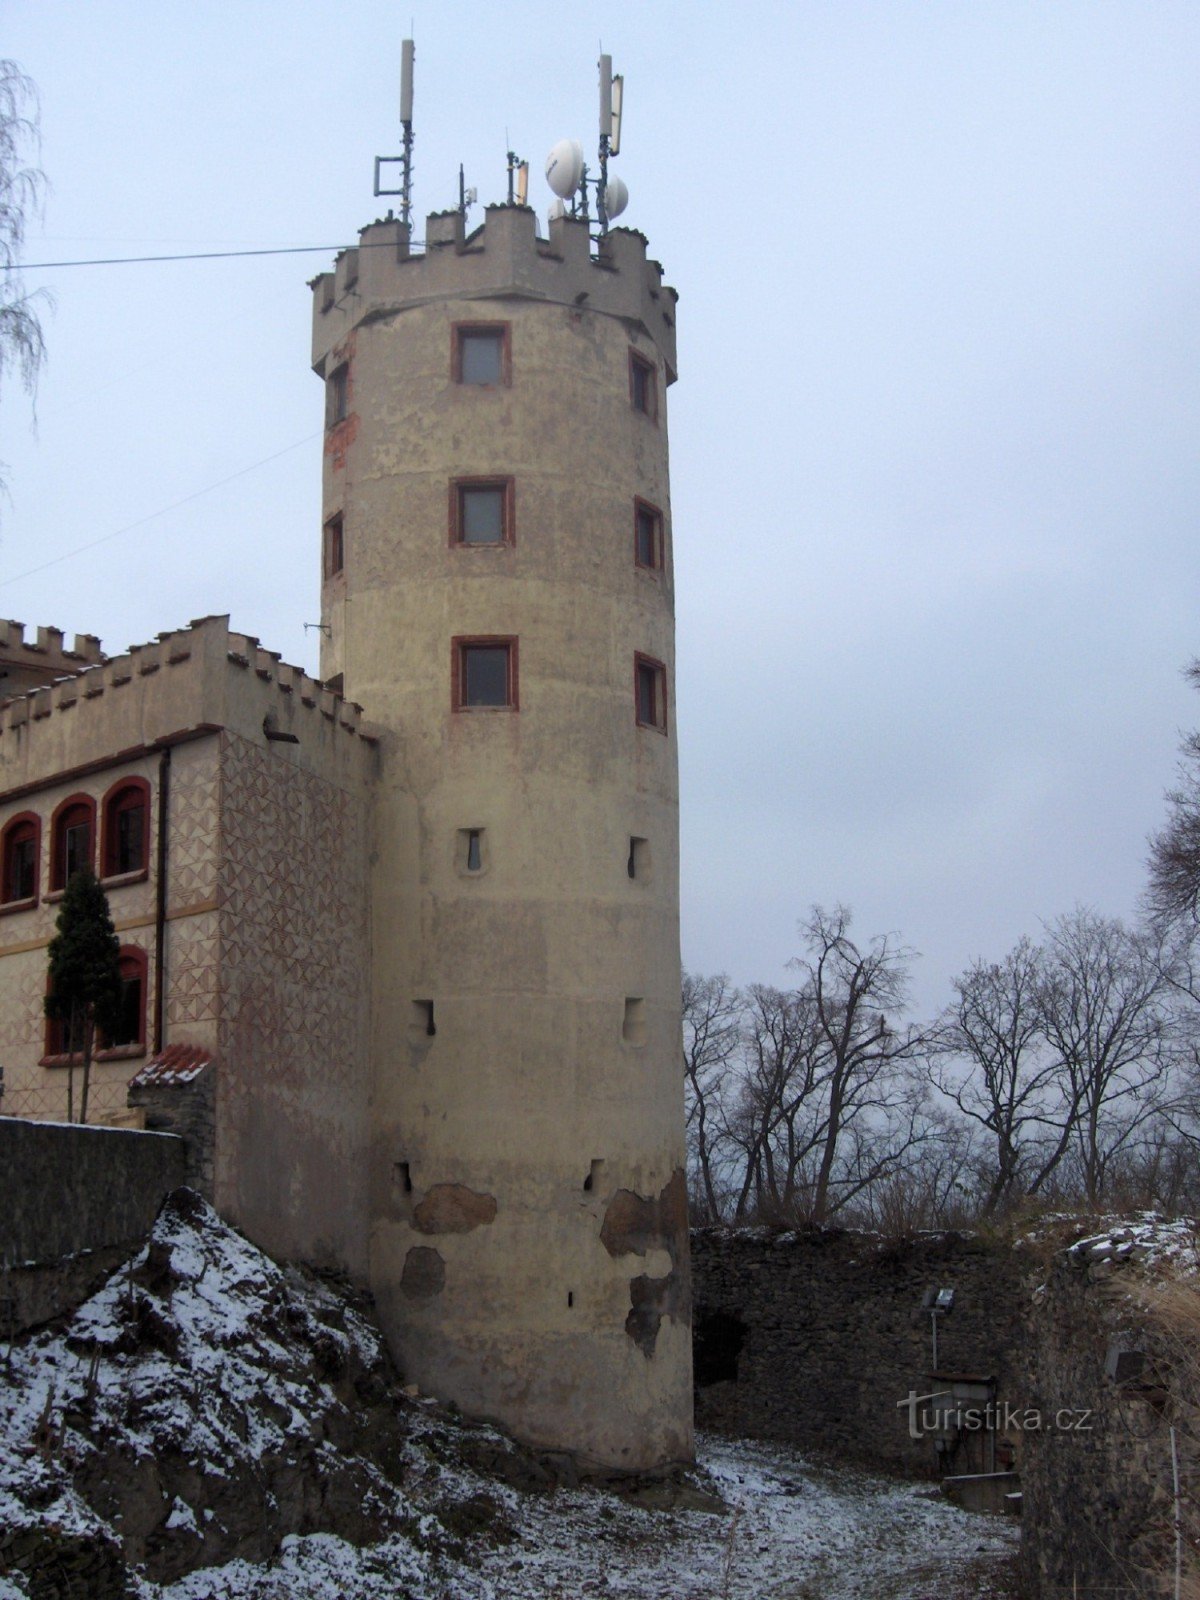 Torre mirador Doubravka